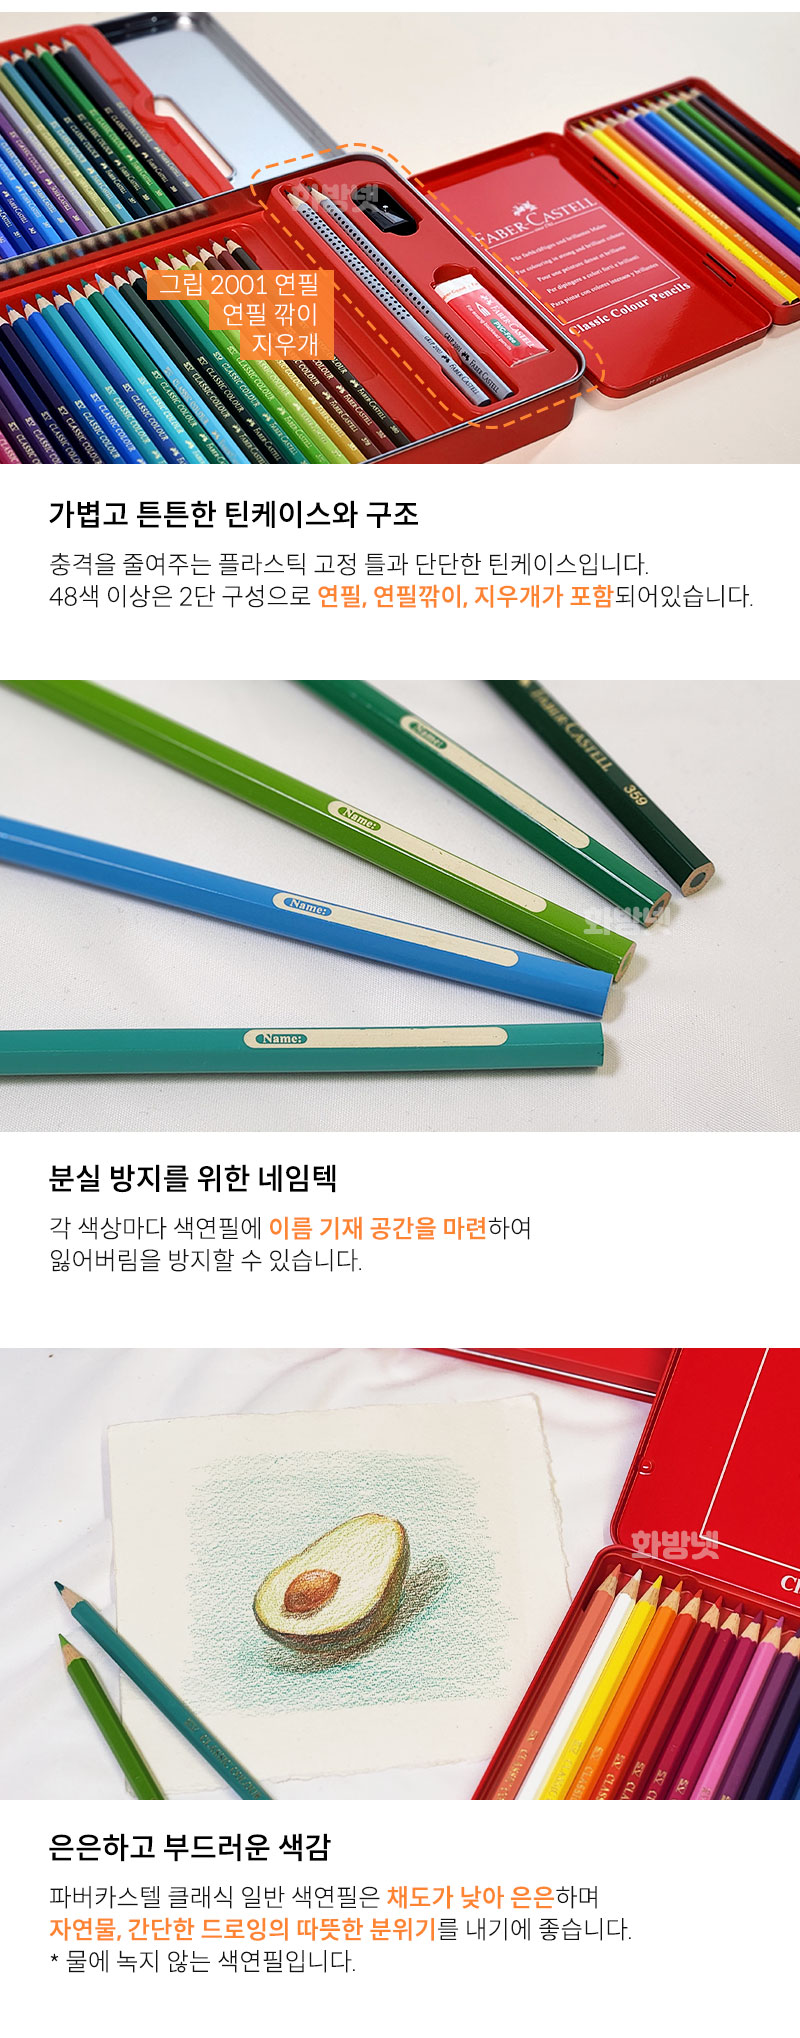 파버카스텔 일반 색연필 제품 소개